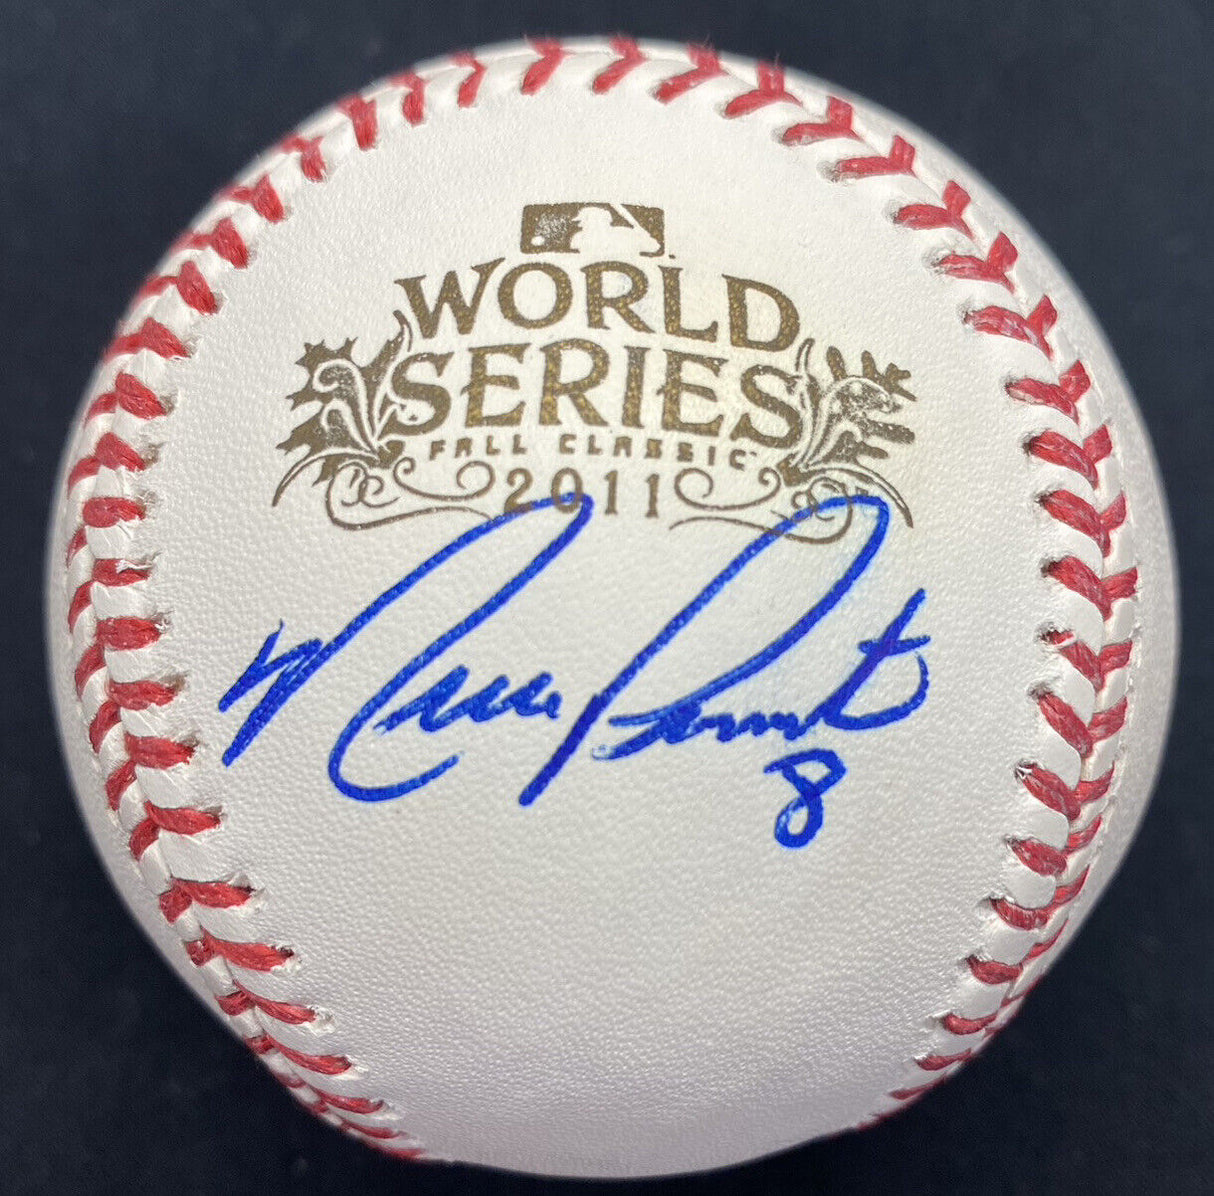 Nick Punto Signed 2011 World Series Baseball JSA Witness